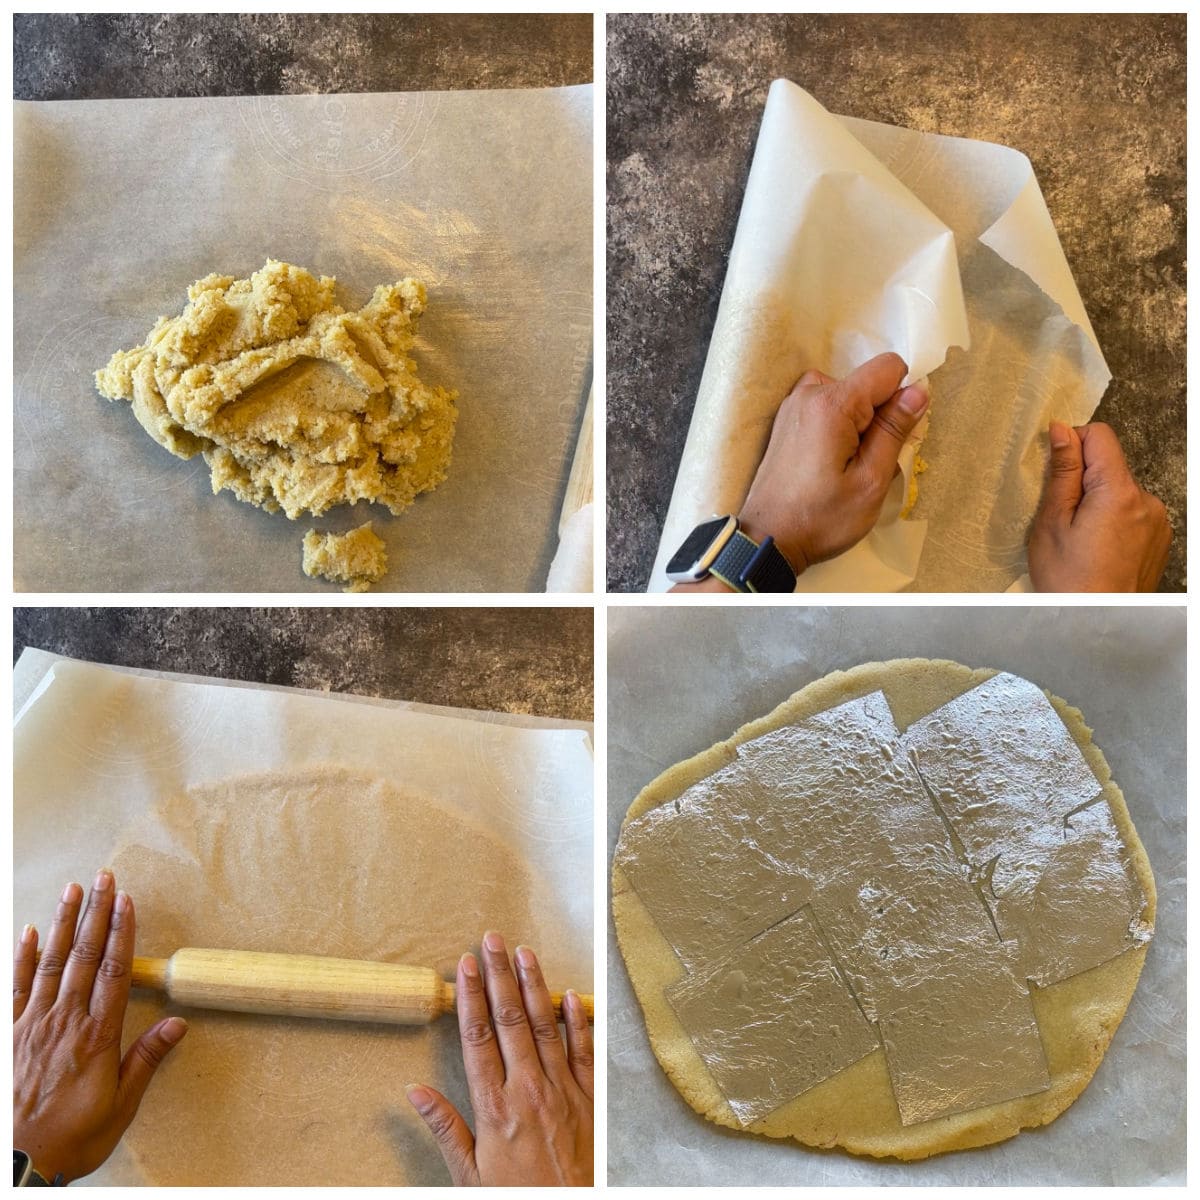 kneading the dough to make katlis